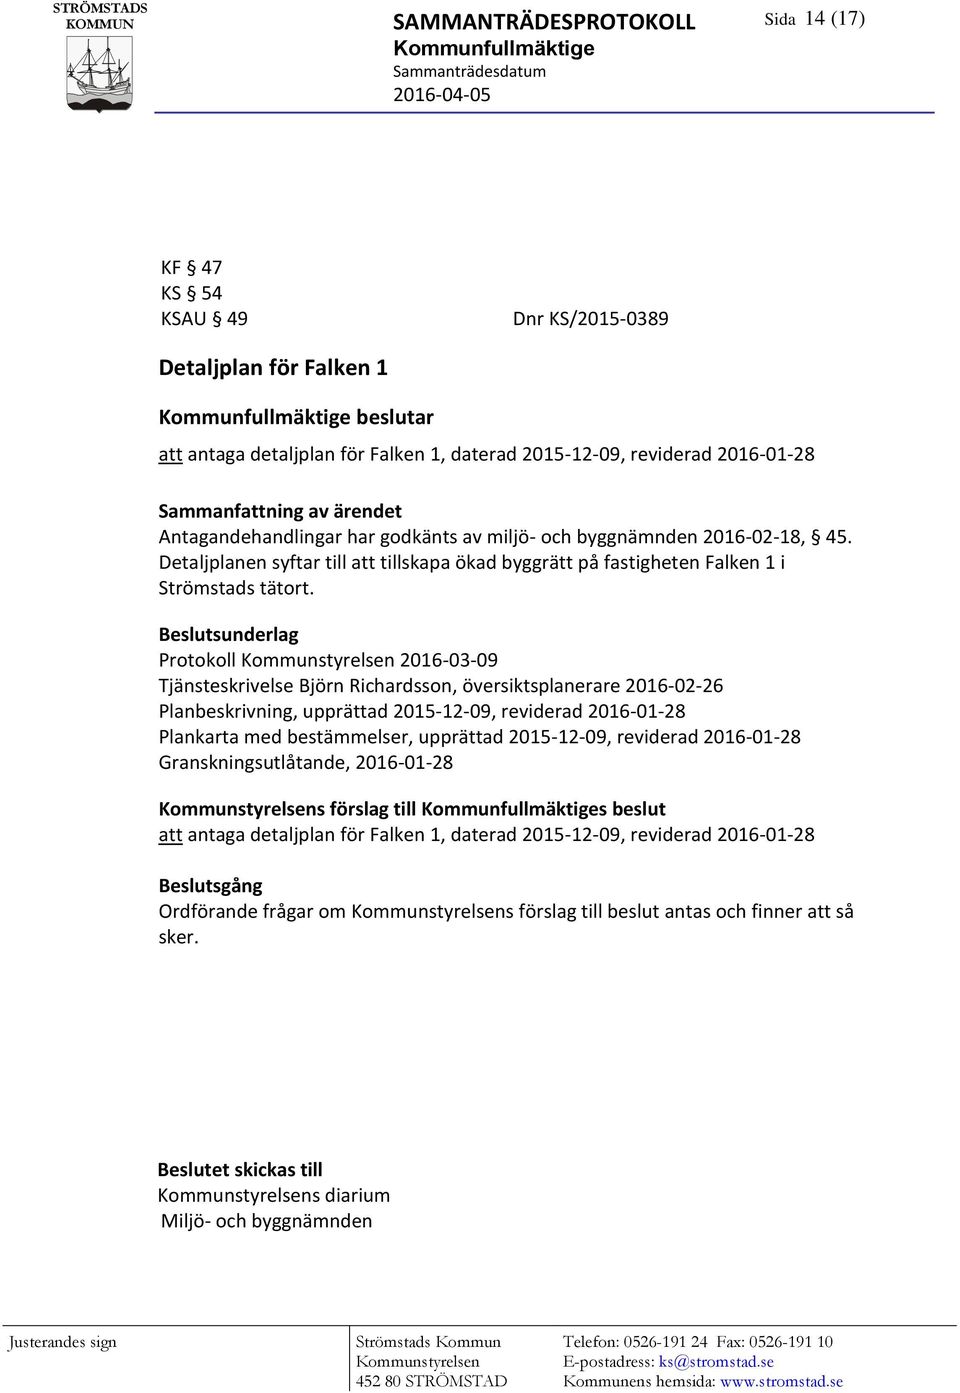 Protokoll 2016-03-09 Tjänsteskrivelse Björn Richardsson, översiktsplanerare 2016-02-26 Planbeskrivning, upprättad 2015-12-09, reviderad 2016-01-28 Plankarta med bestämmelser, upprättad 2015-12-09,